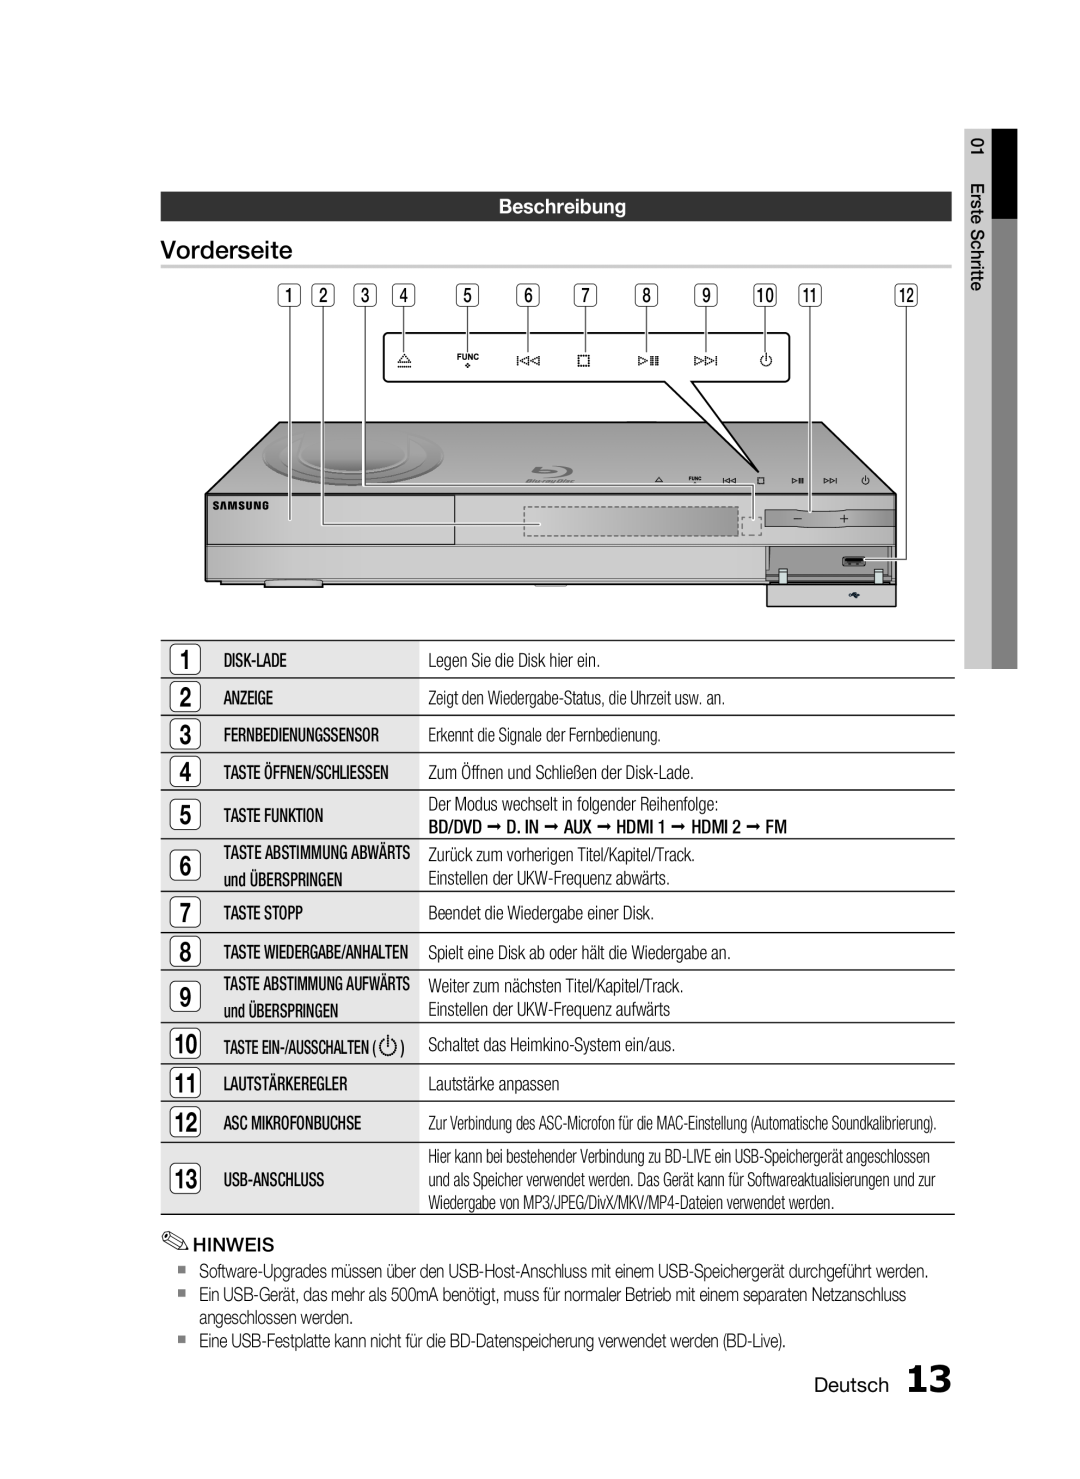 Samsung HT-C6200/EDC, HT-C6200/XEN, HT-C6200/XEF manual Vorderseite, Beschreibung, Deutsch 